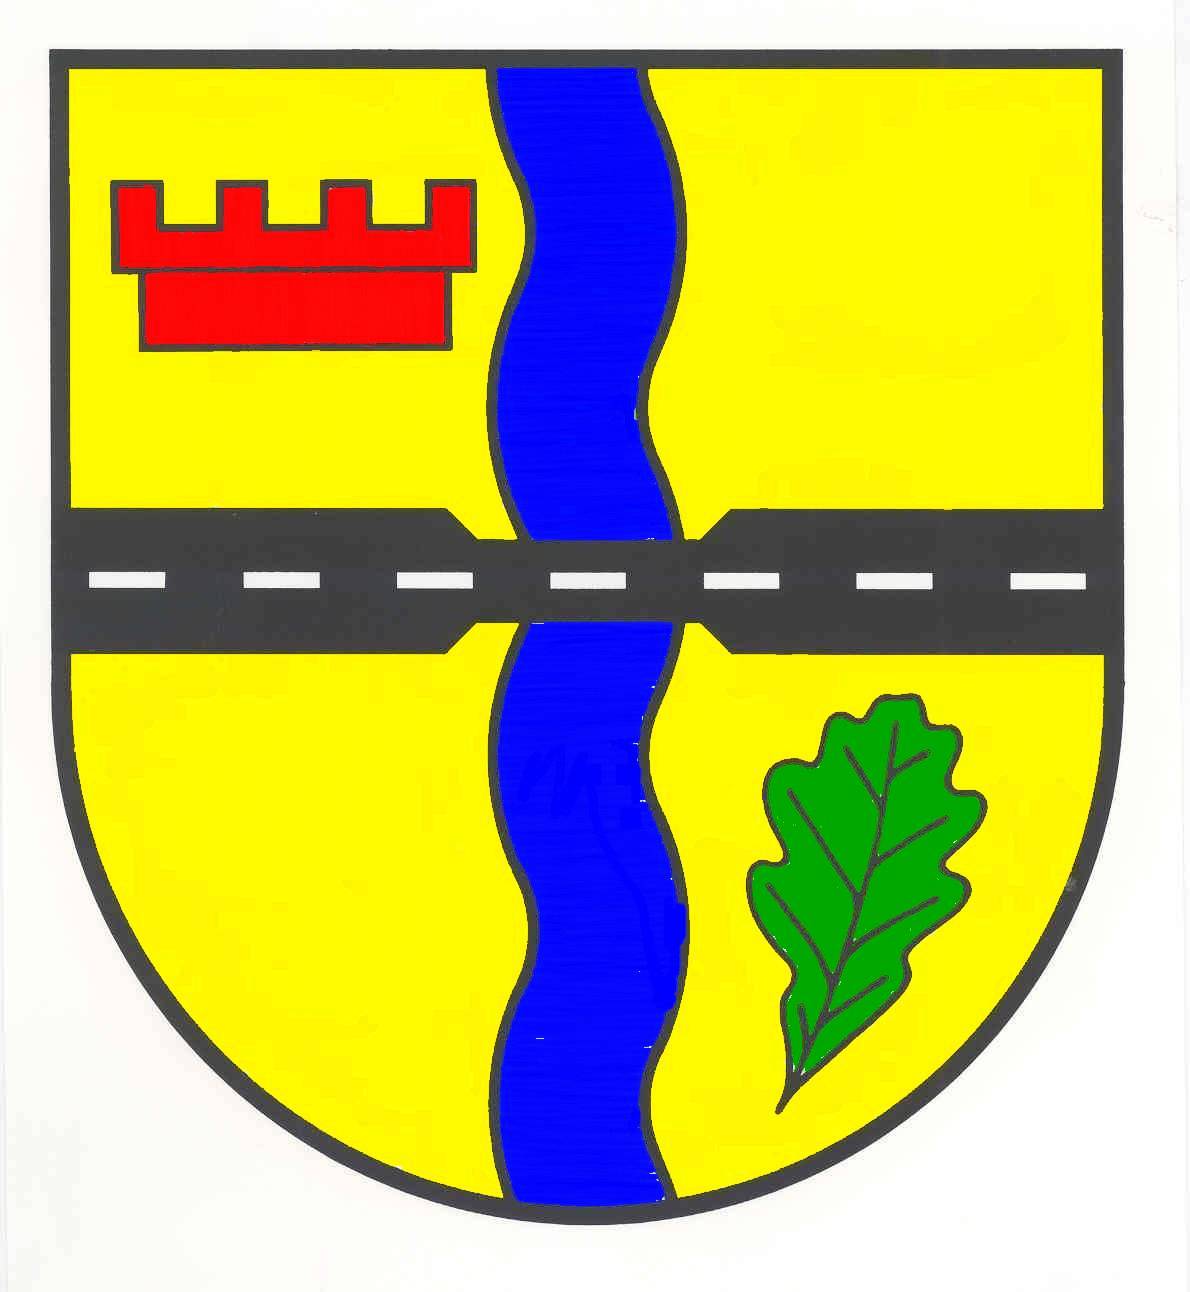 Wappen Gemeinde Treia, Kreis Schleswig-Flensburg